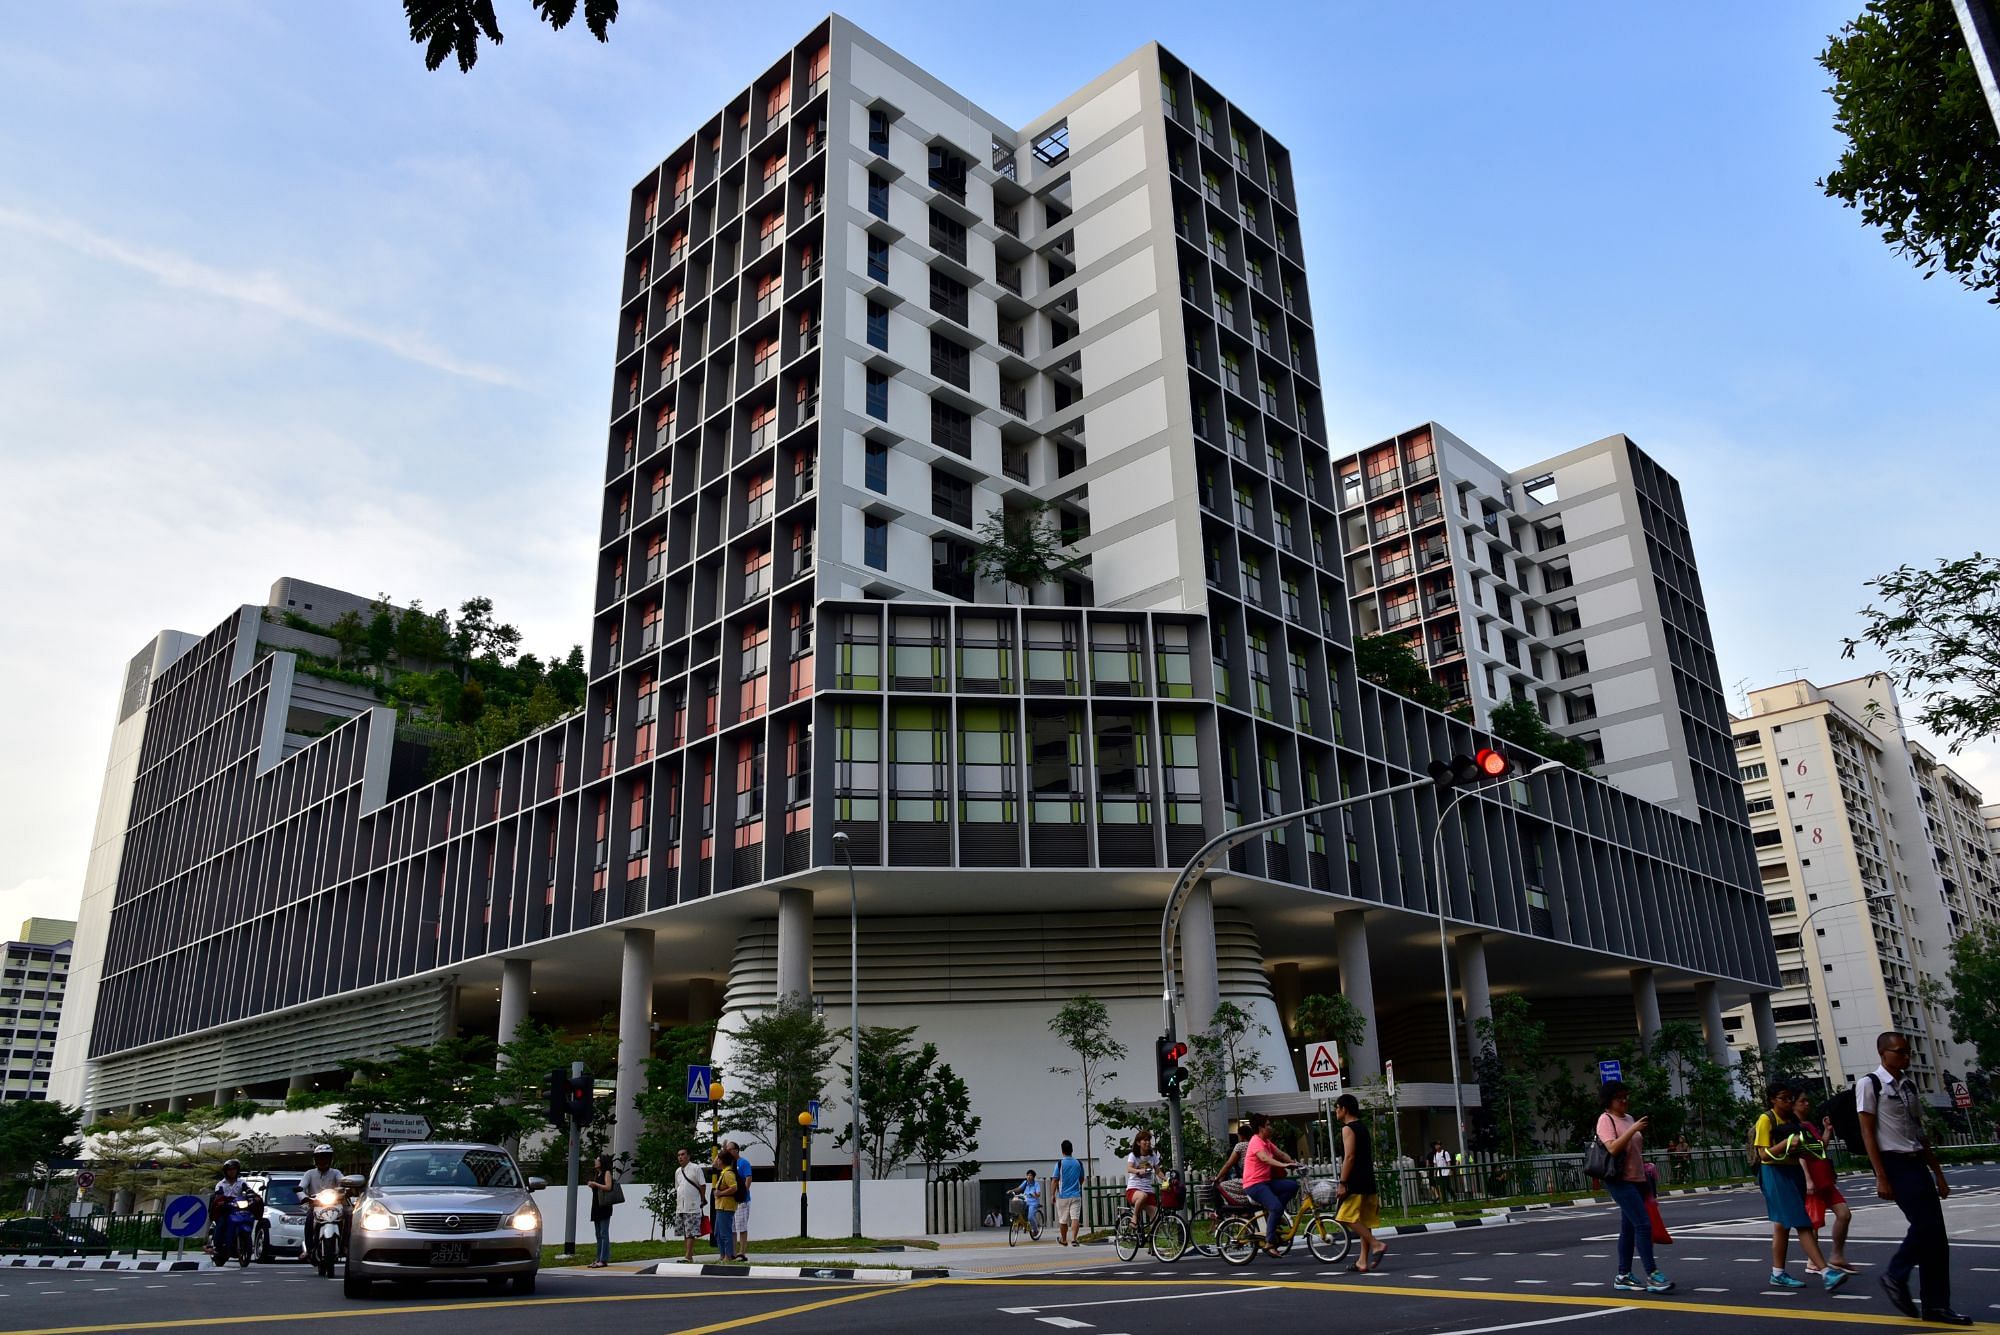 HDB Kampung Admiralty Housing in Singapore